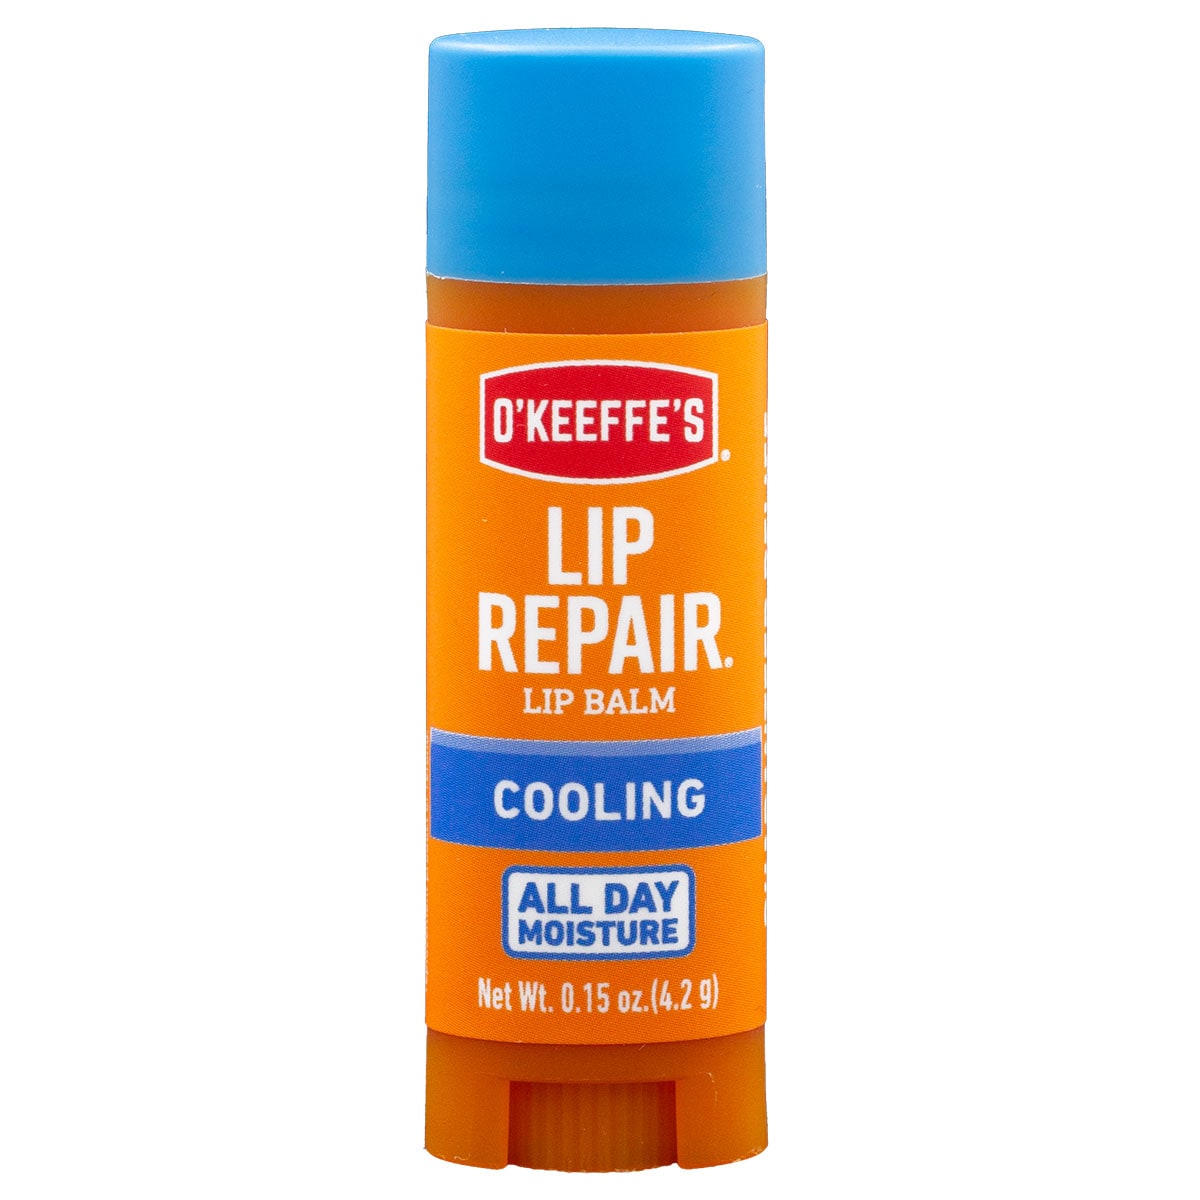 O'Keeffe's Lip Repair Cool 4.2g